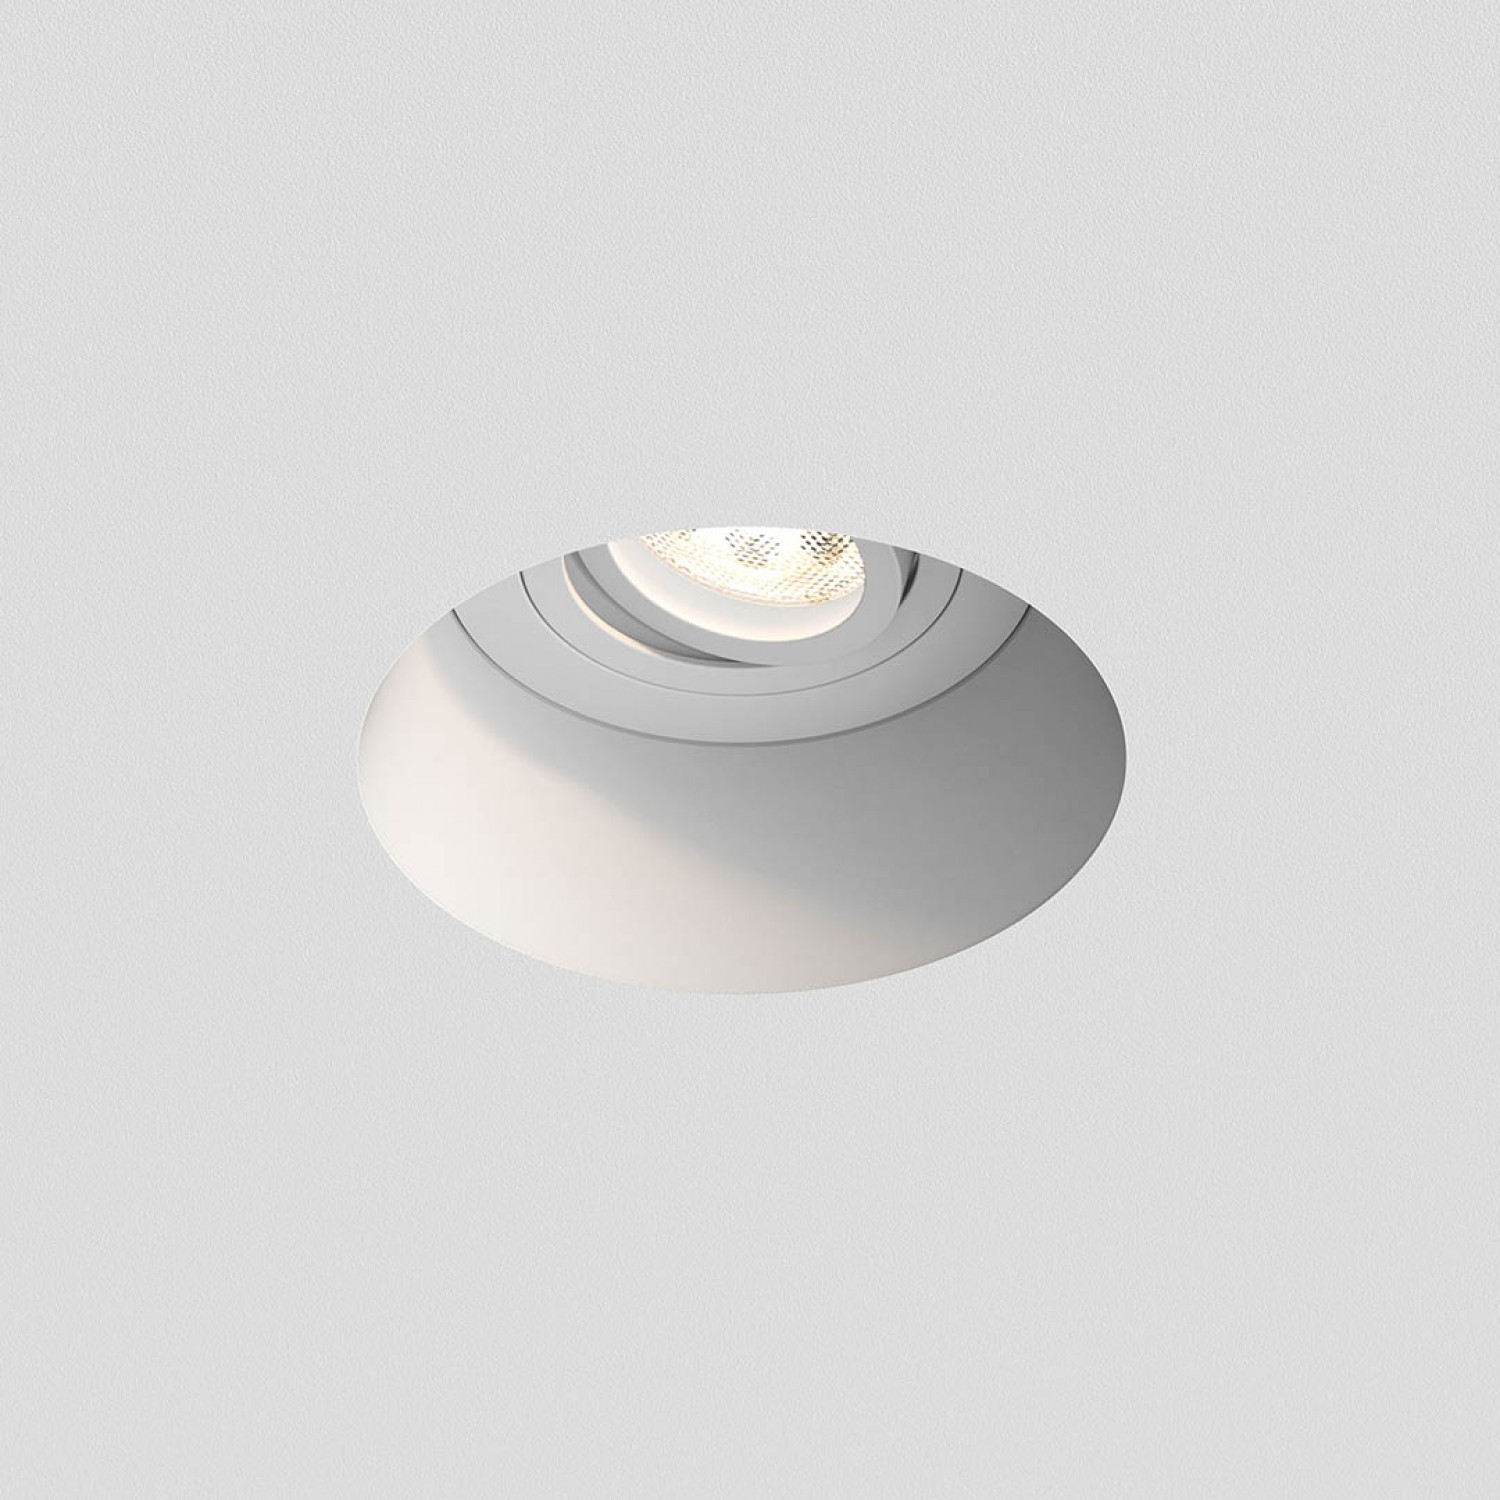 Врезной точечный светильник Astro Blanco Round Adjustable 1253005